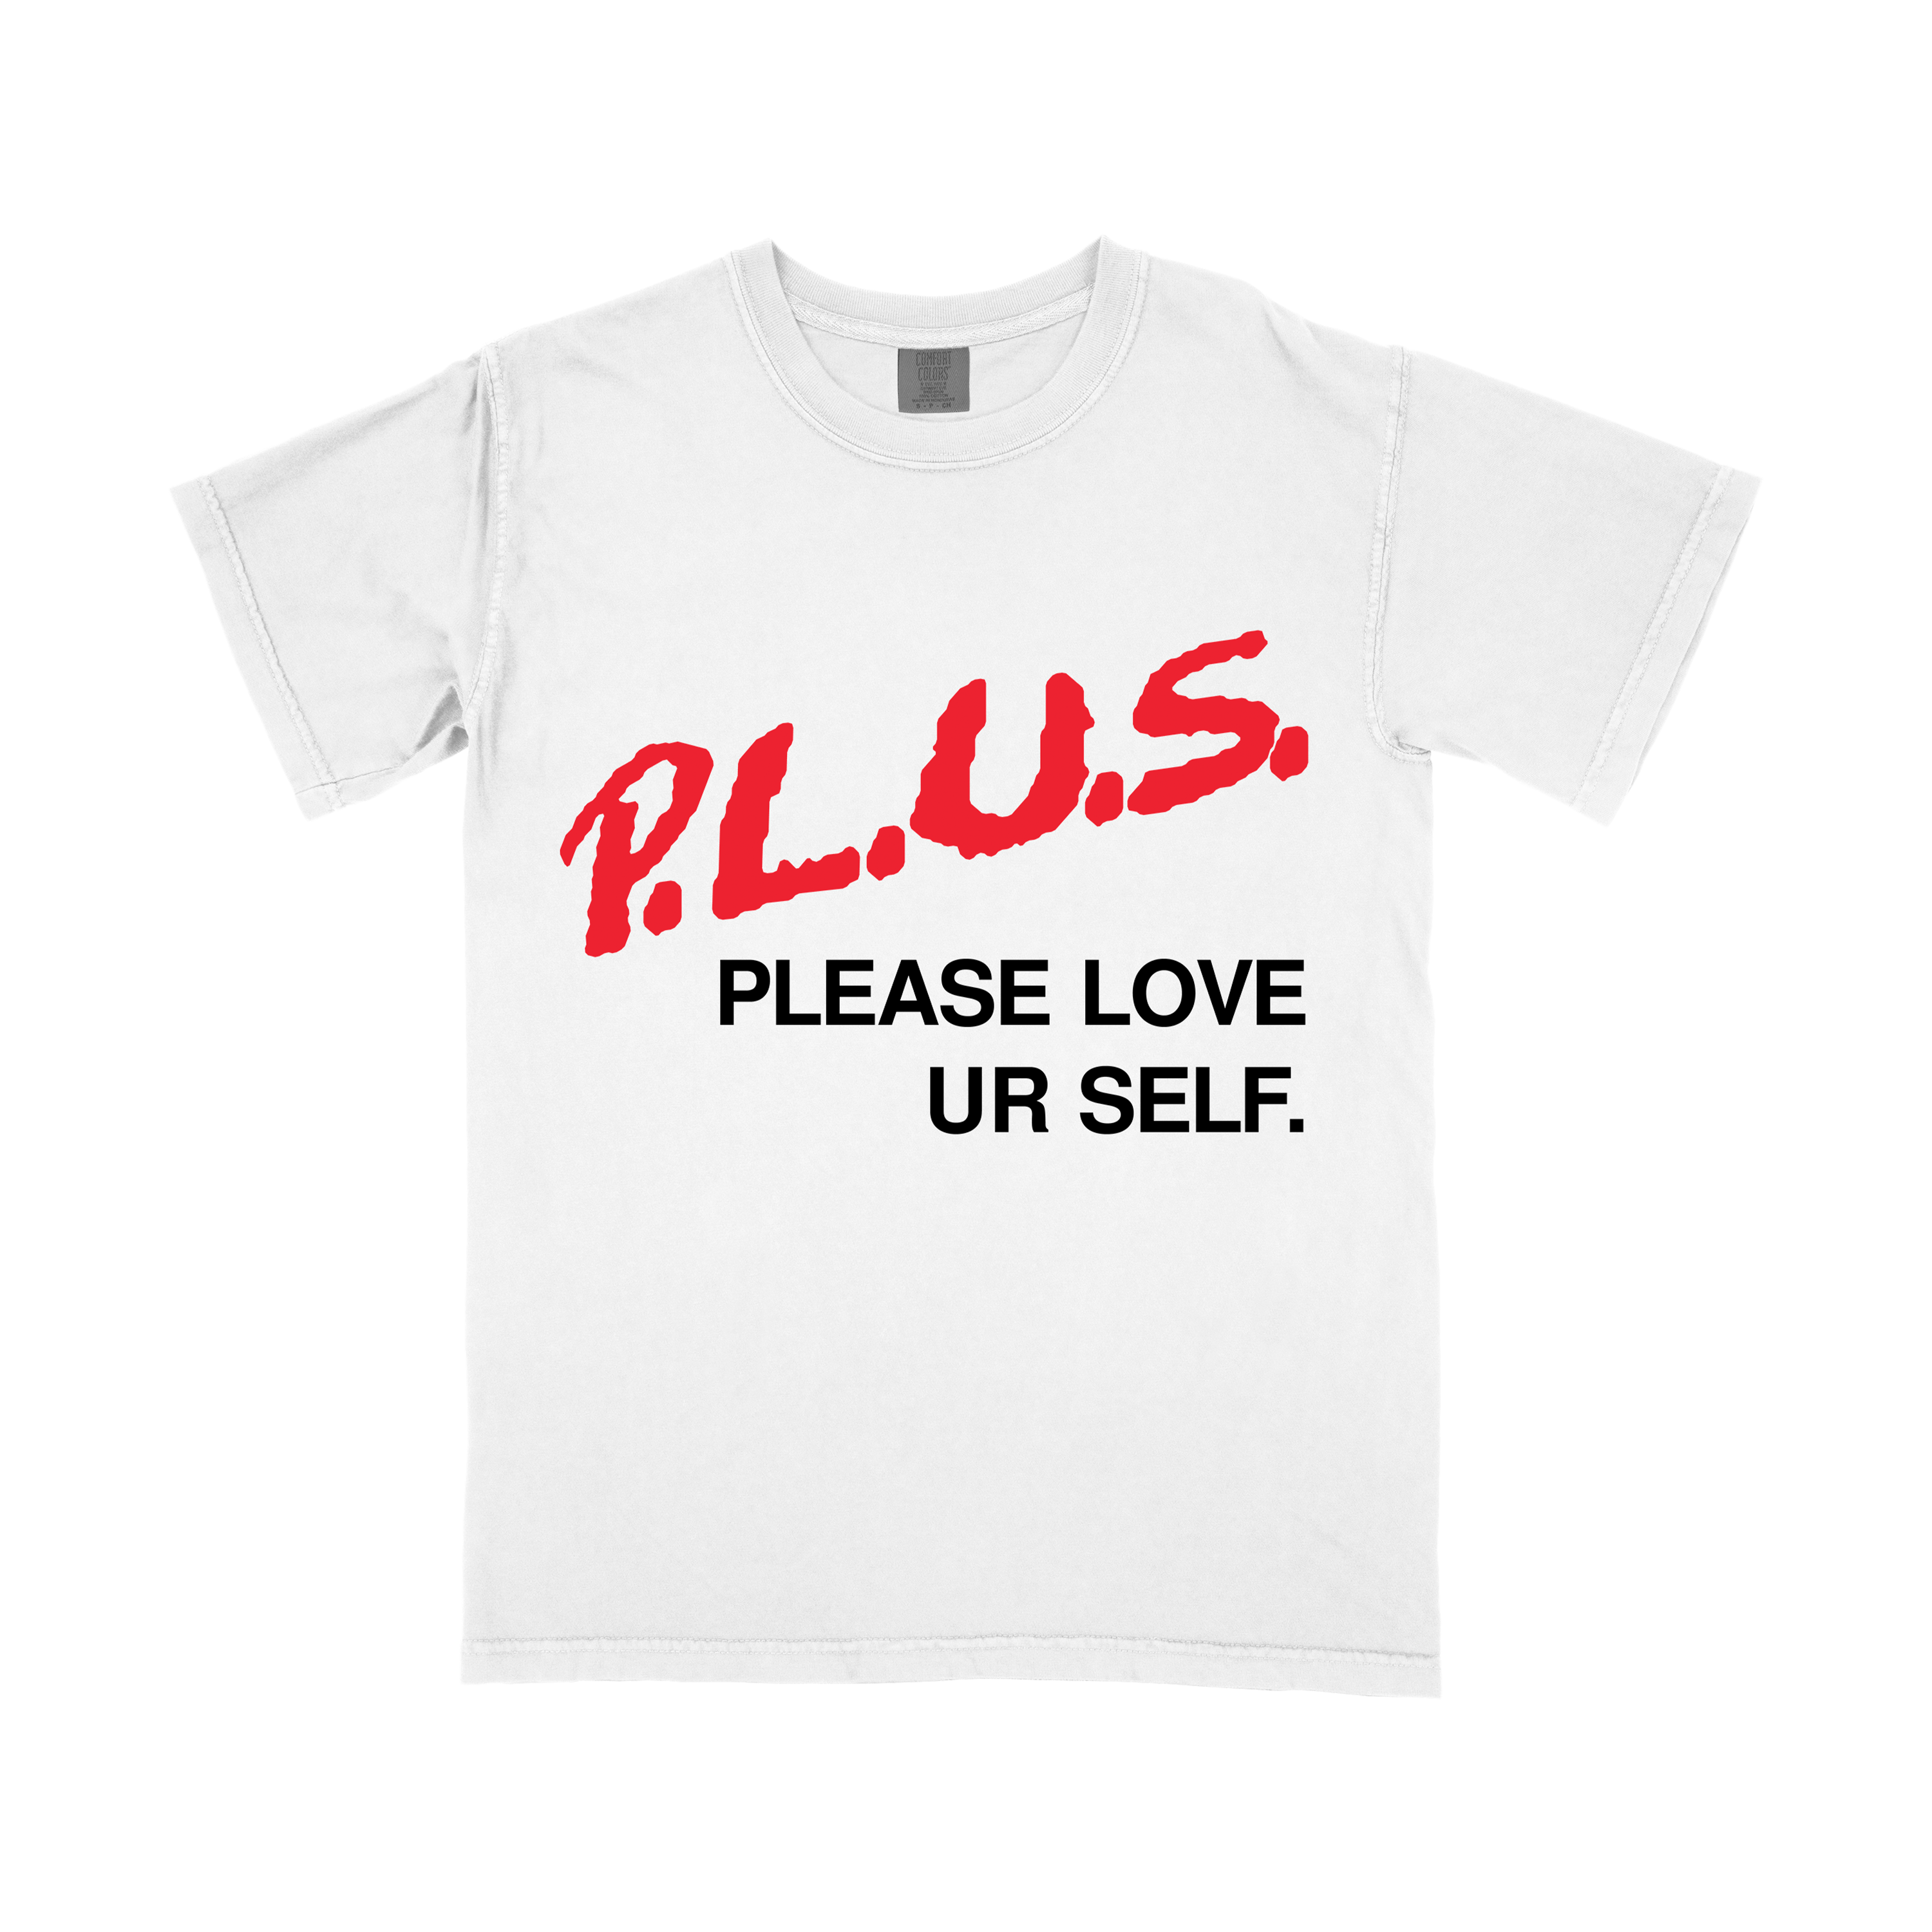 "Please Love Ur Self' t-shirt